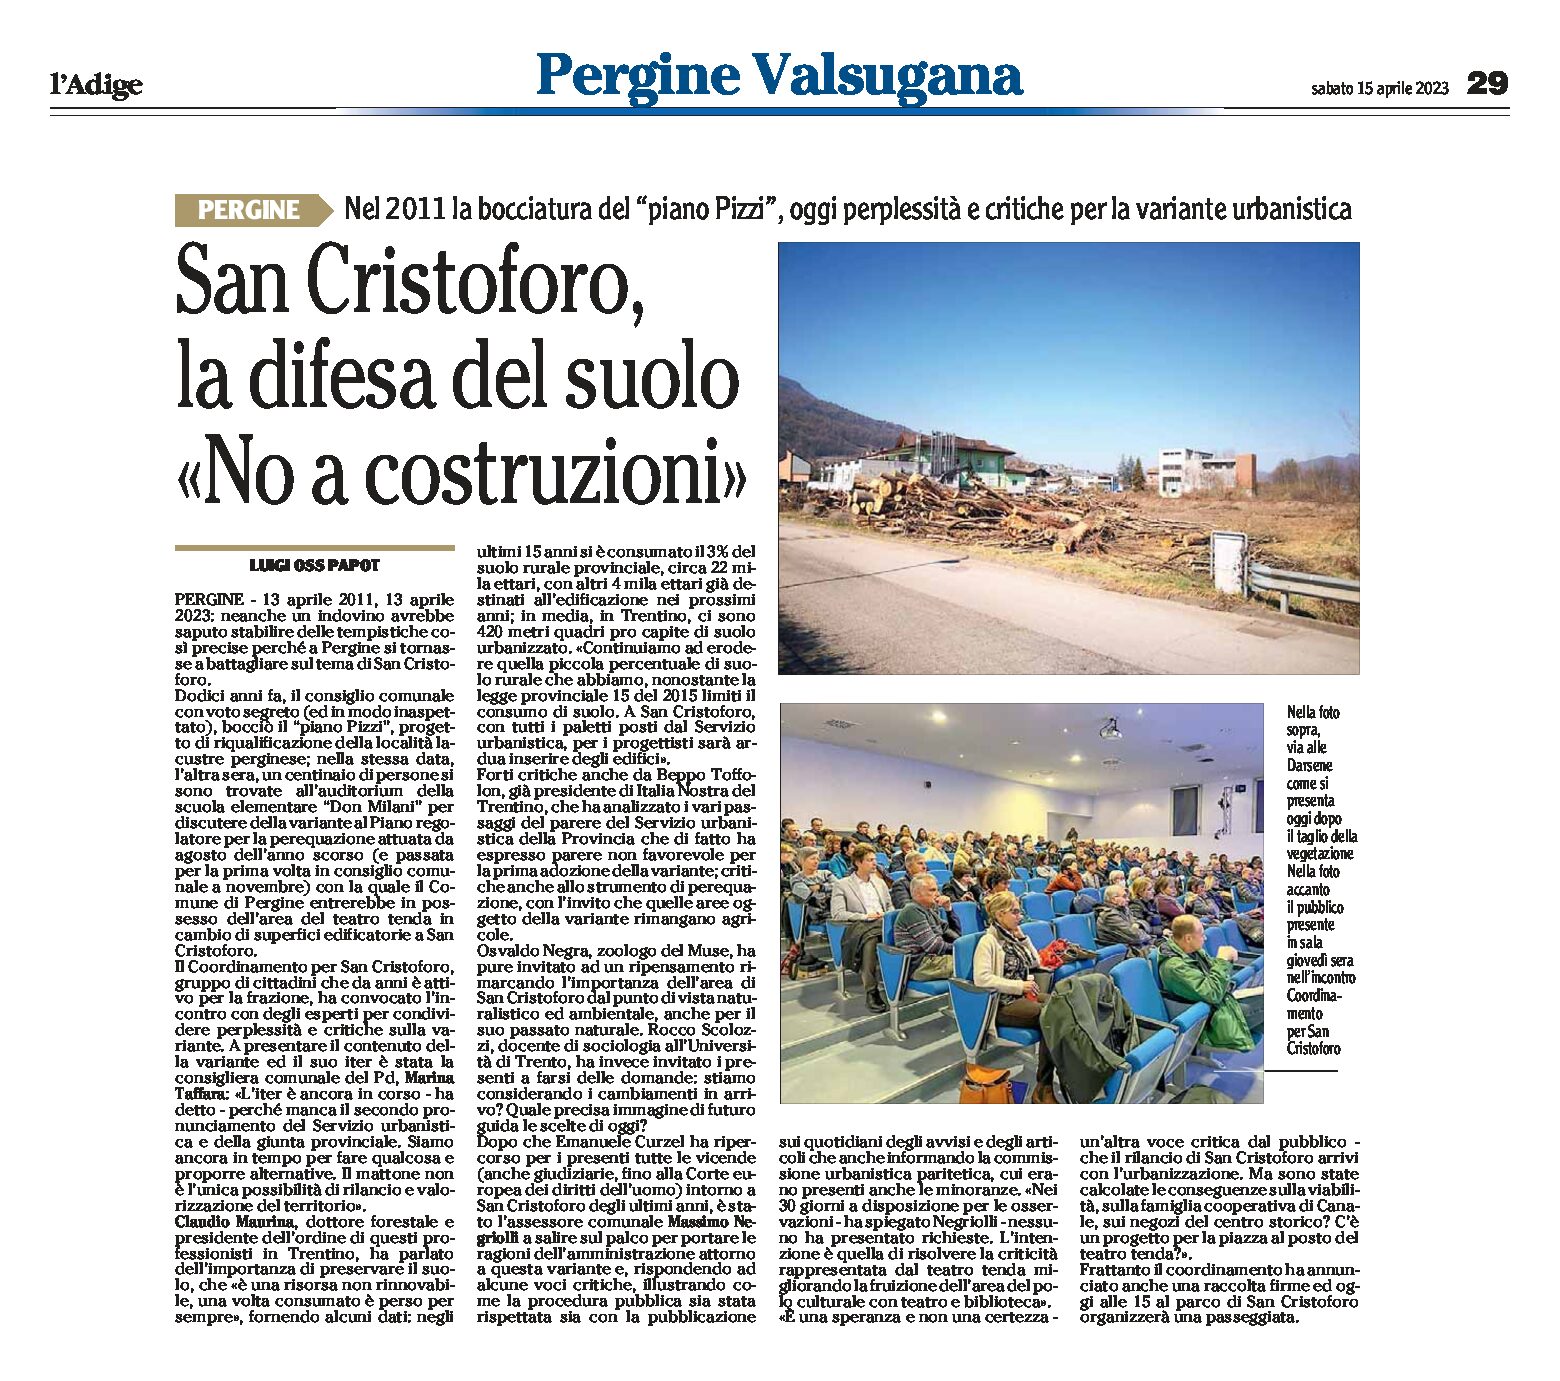 San Cristoforo: la difesa del suolo “no a costruzioni”